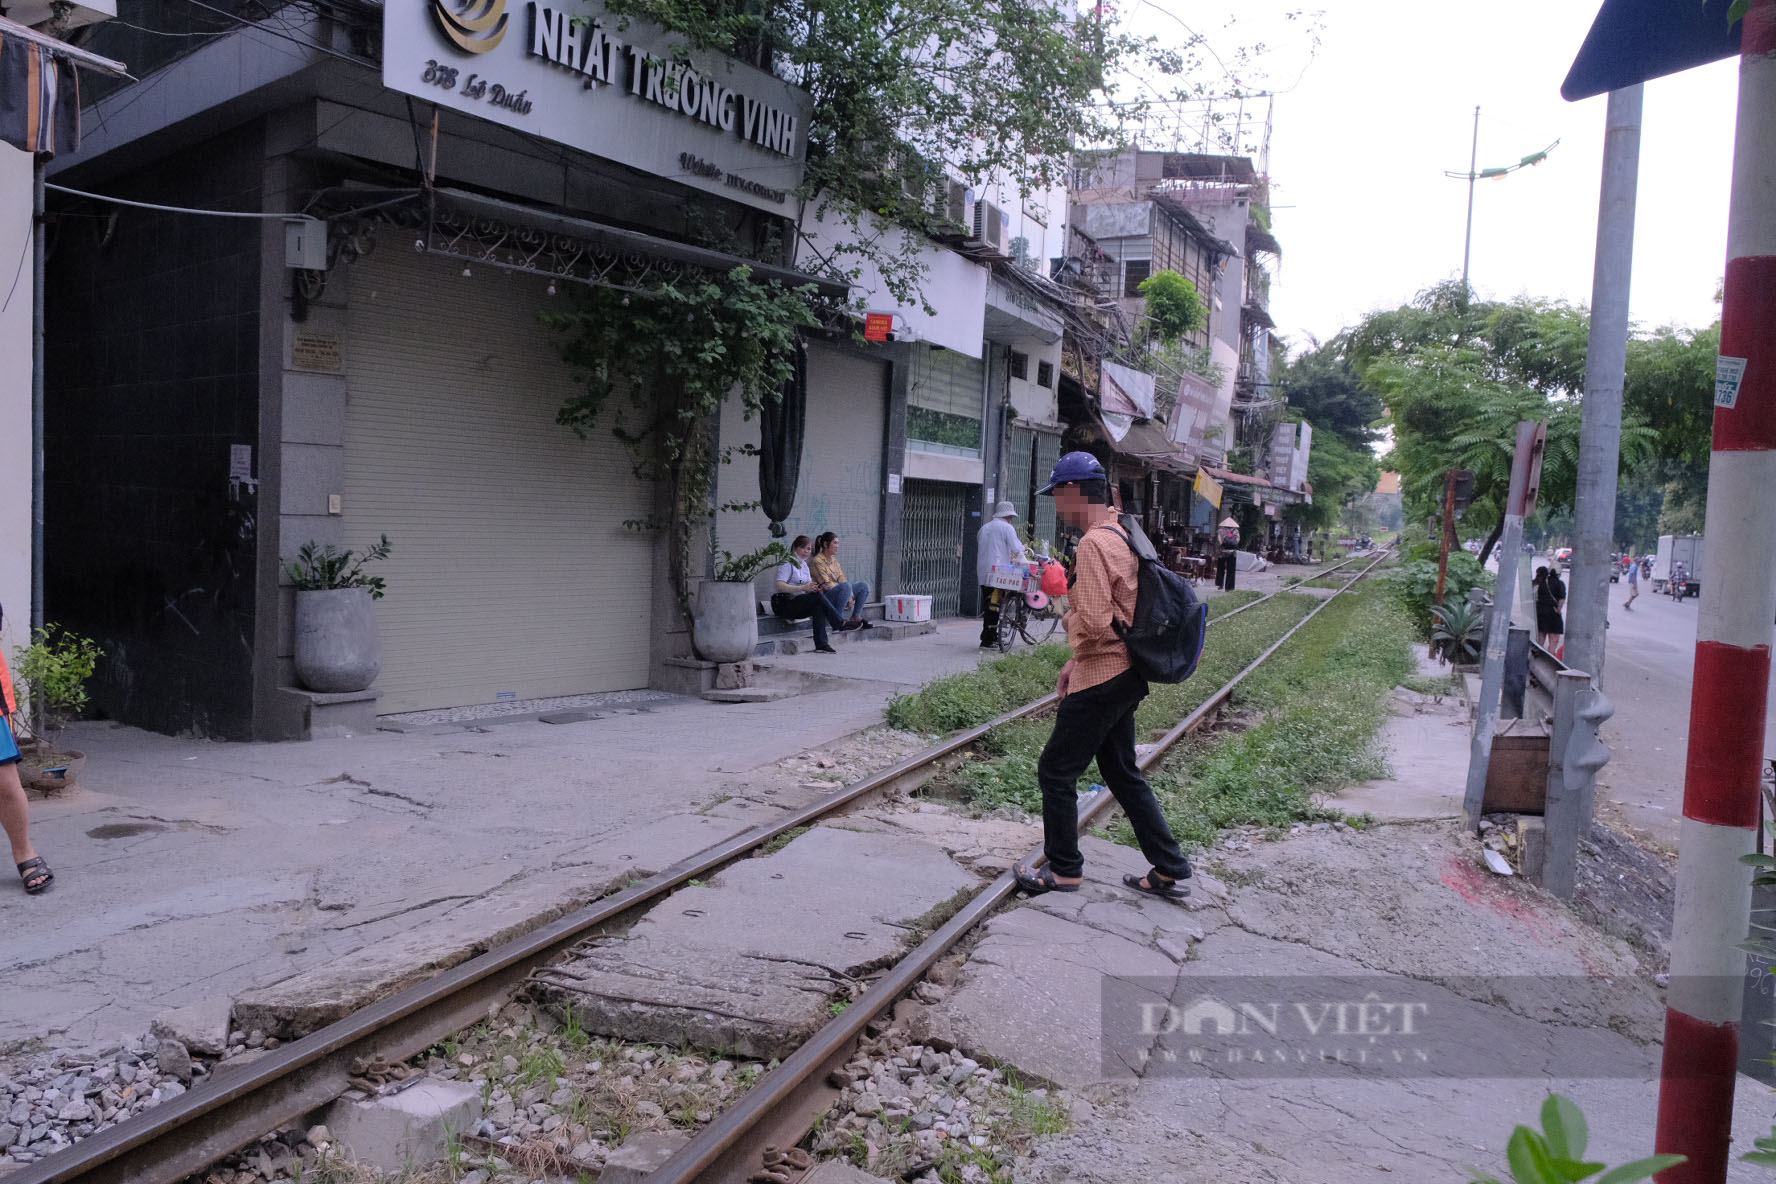 Hà Nội: Nguy hiểm rình rập từ đường dân sinh tự phát cắt ngang đường sắt - Ảnh 4.